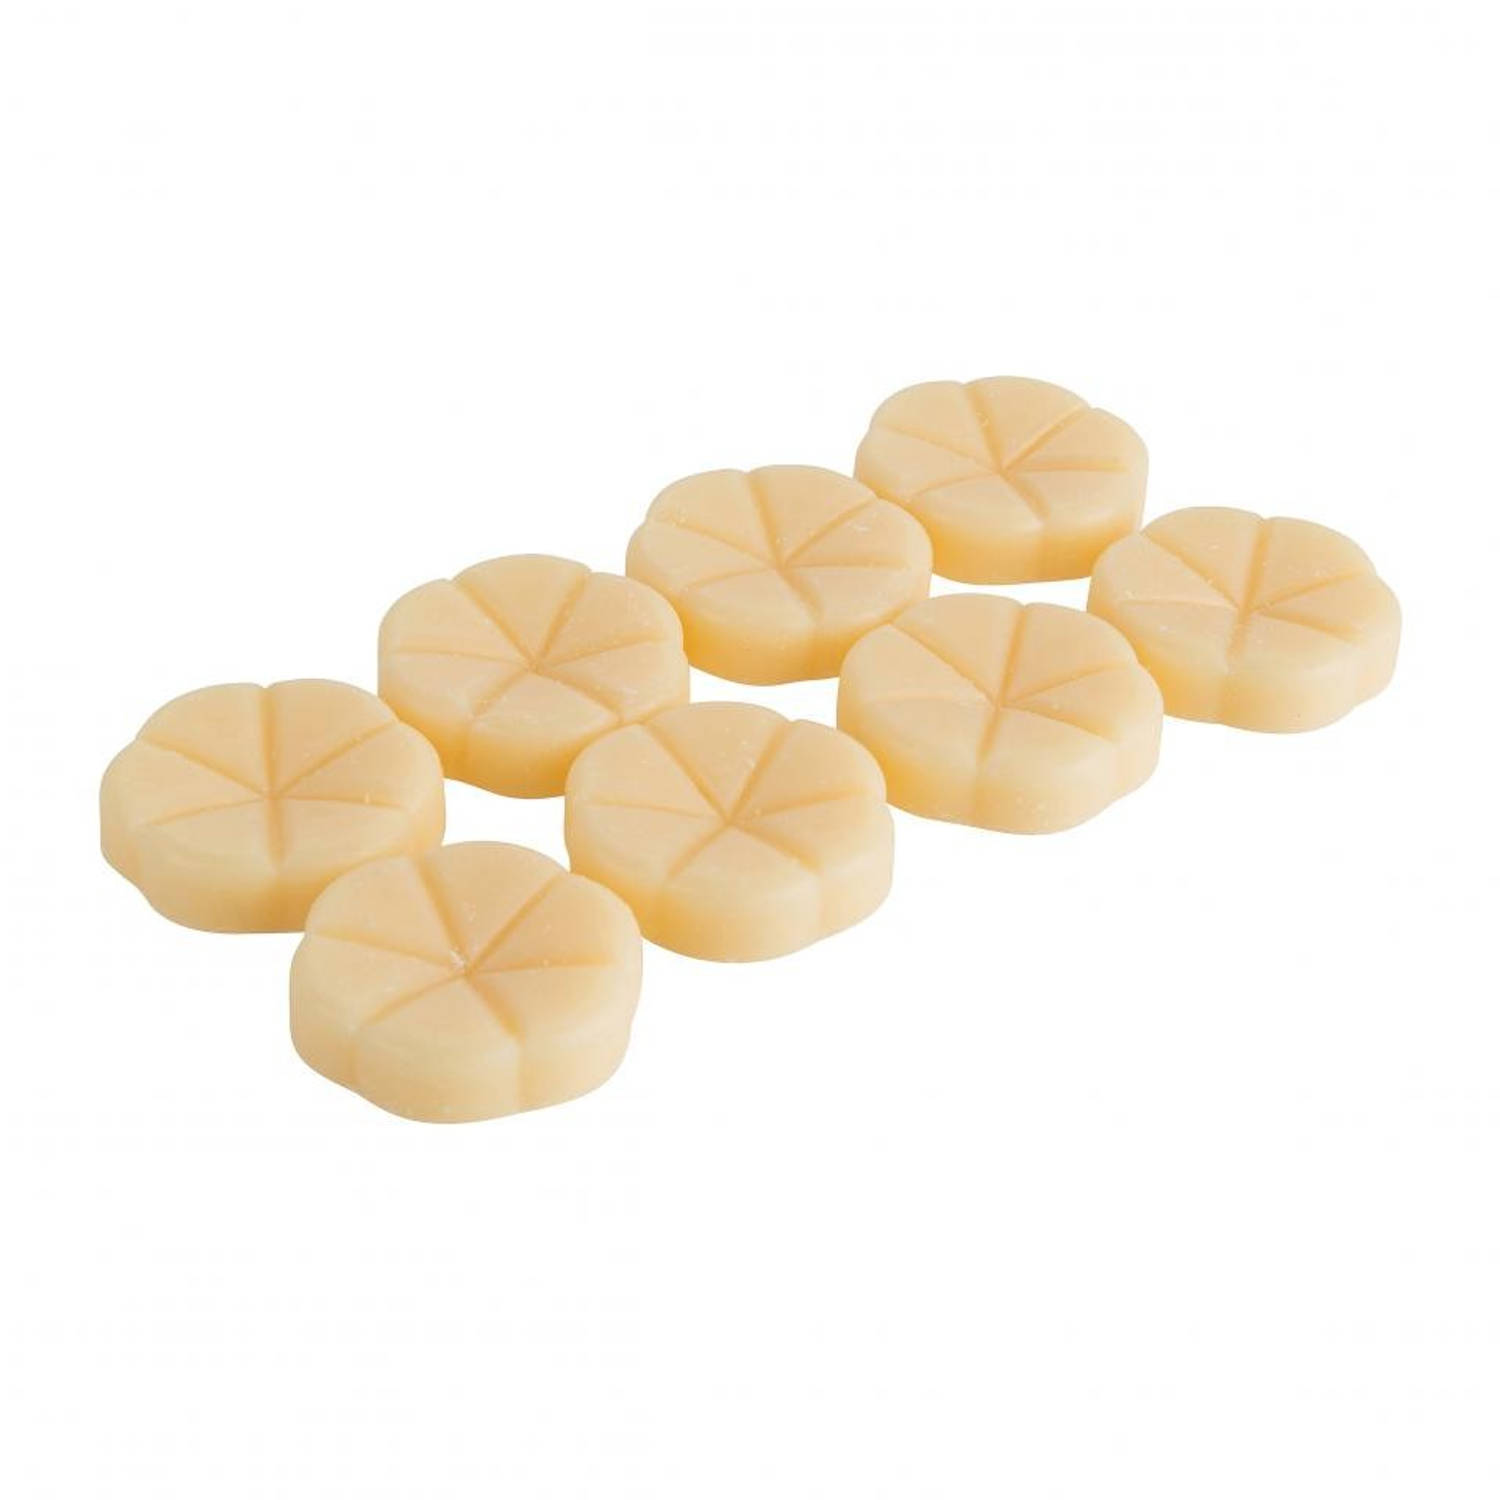 Bolsius geurchips - 8 stuks vanille | Blokker